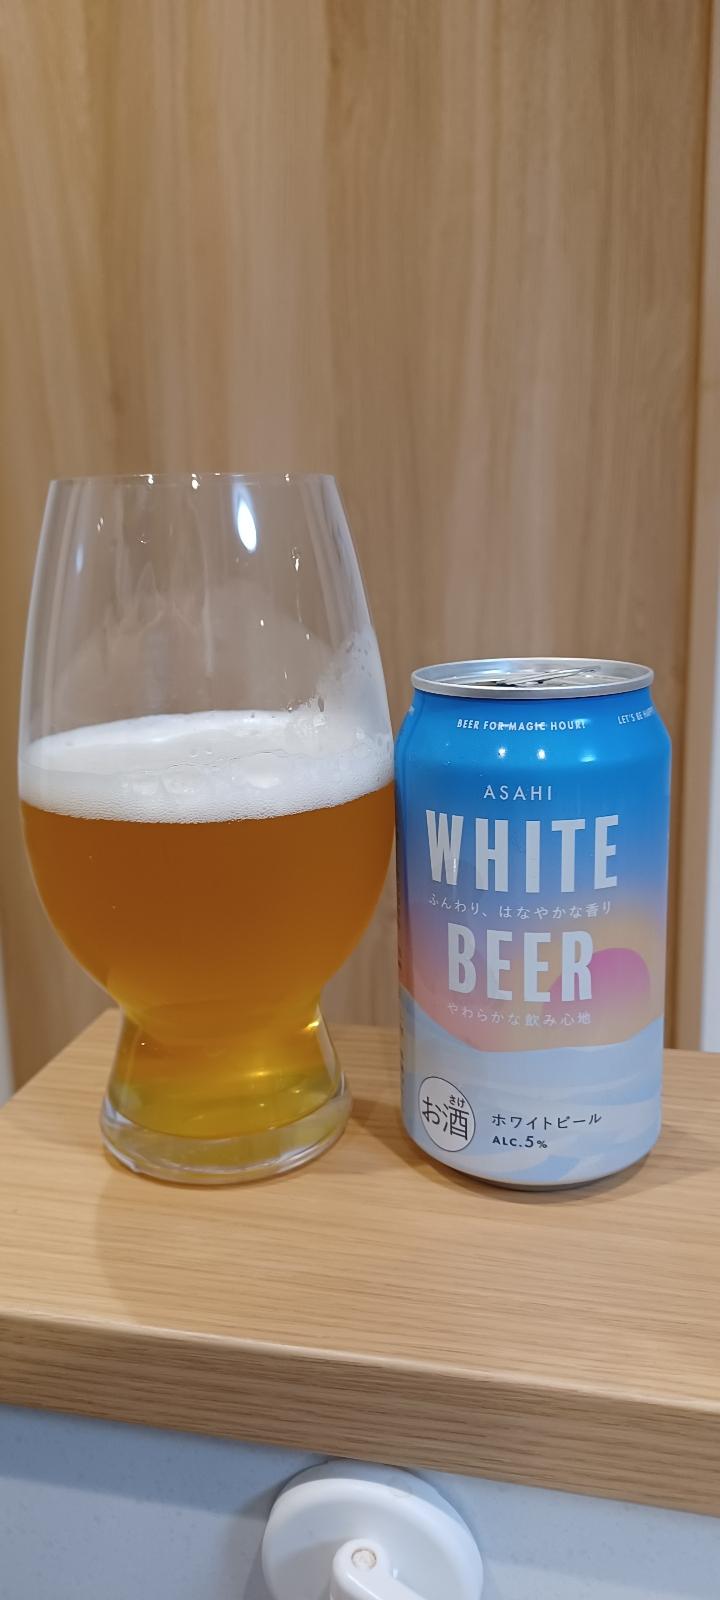 Asahi White Beer